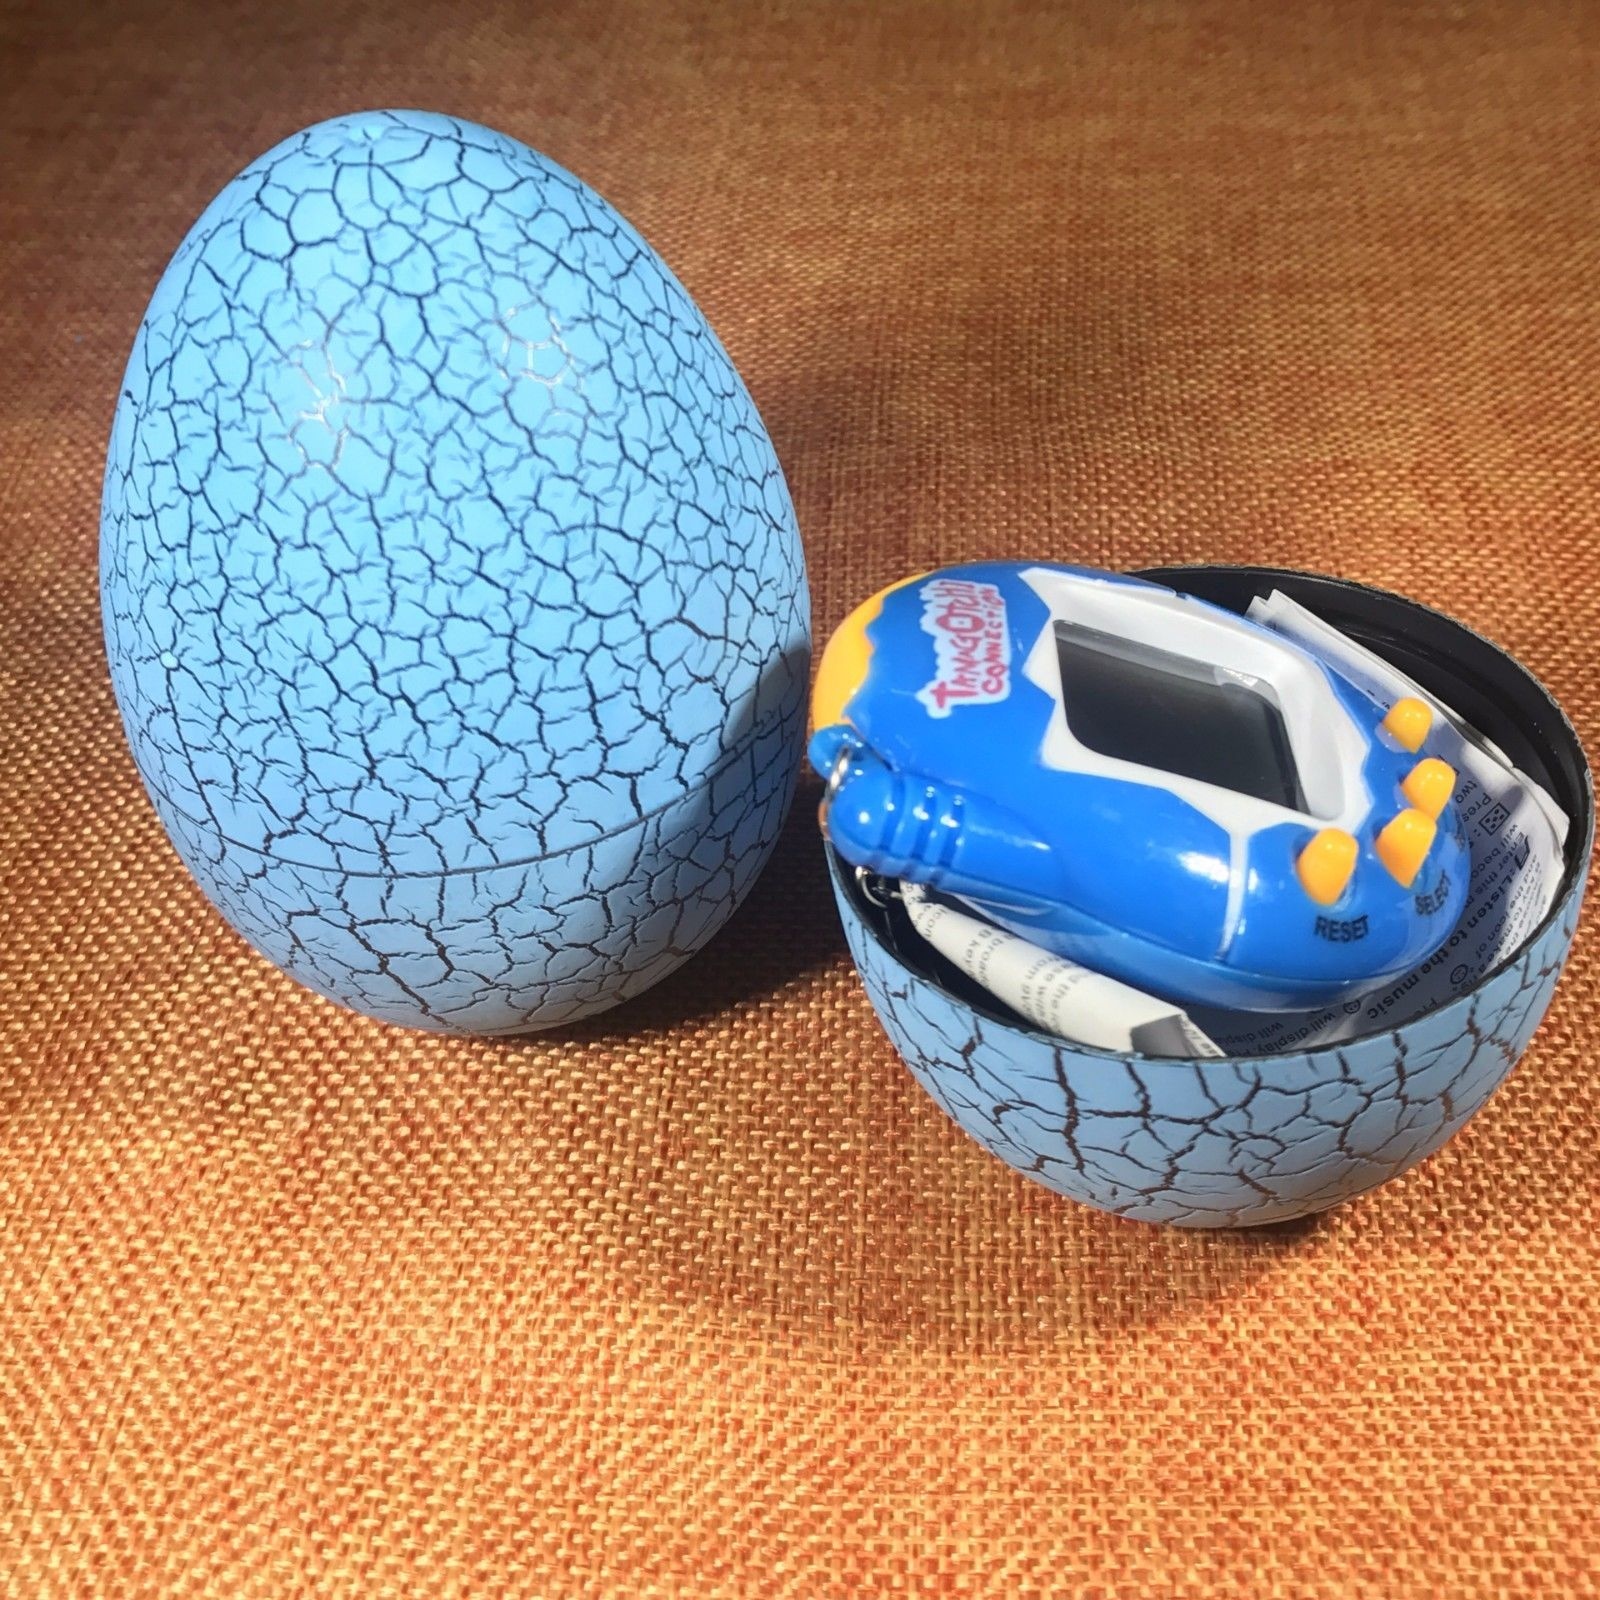 Фото 4 Игрушка электронный питомец Тамагочи в Яйце Динозавра UFT Eggshell Game Blue